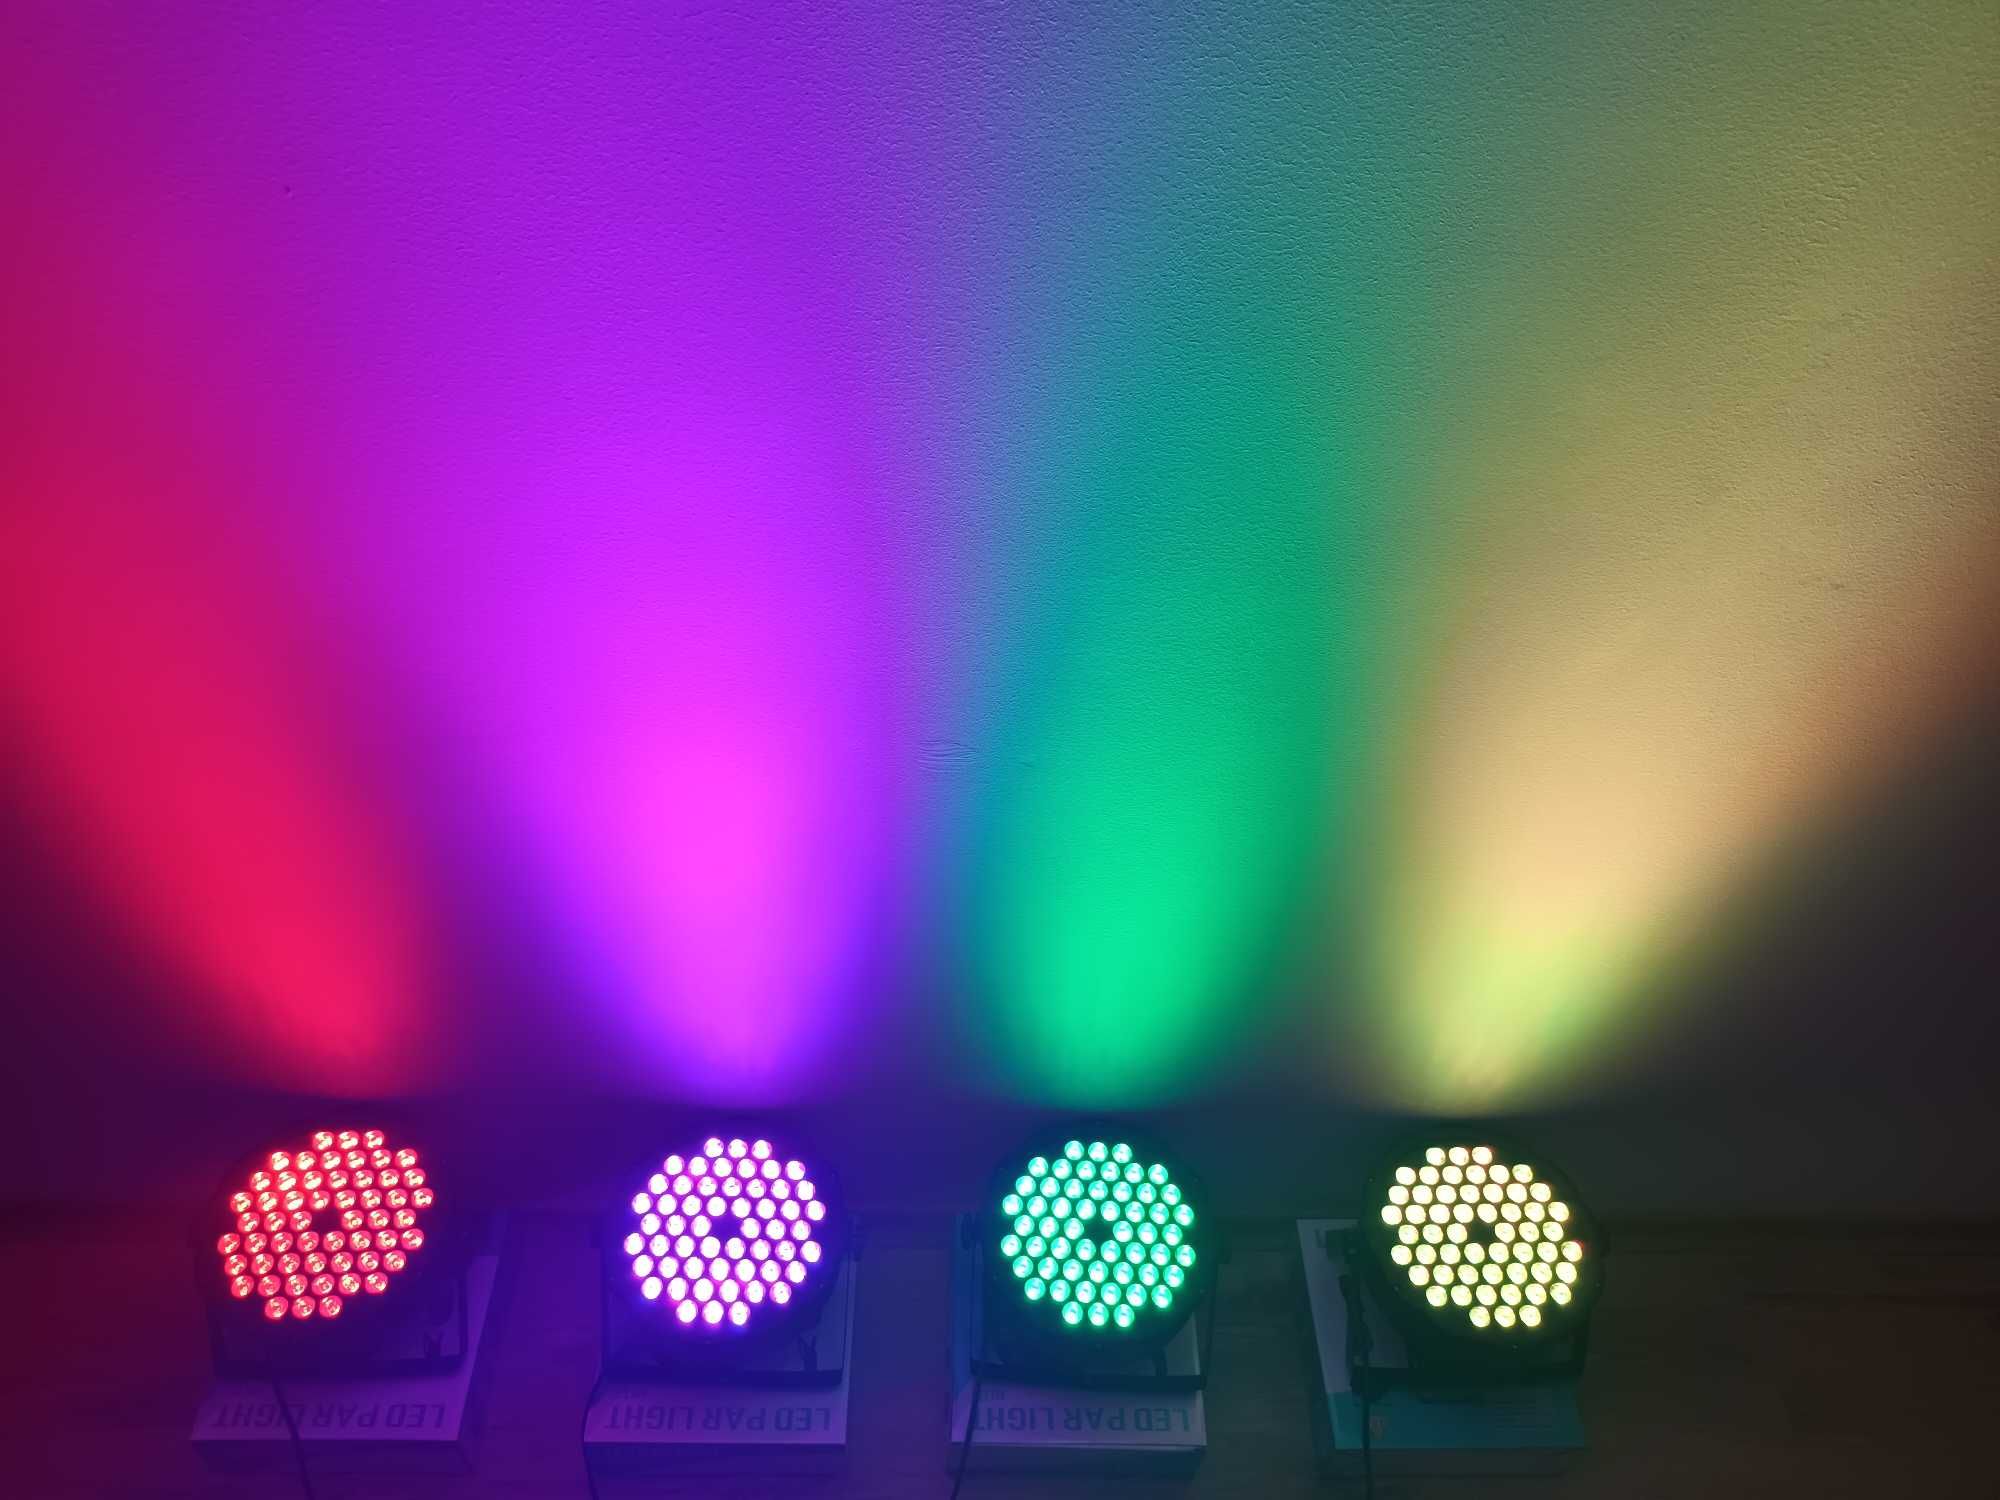 ORGA DE LUMINI 54 LED *Joc spectaculos de culori automat sau pe muzica